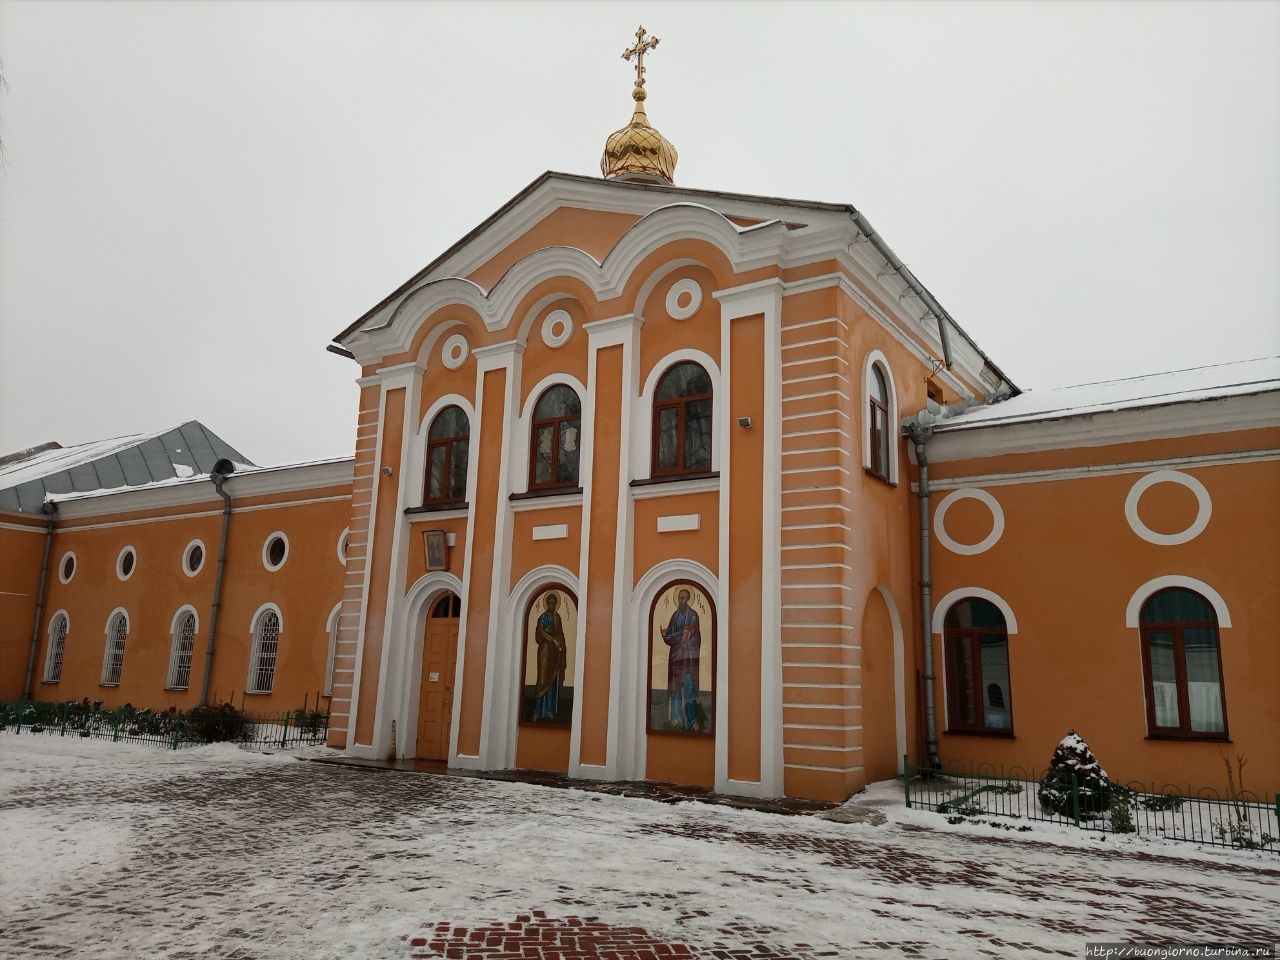 Елецкий монастырь — духовная жемчужина Чернигова Чернигов, Украина